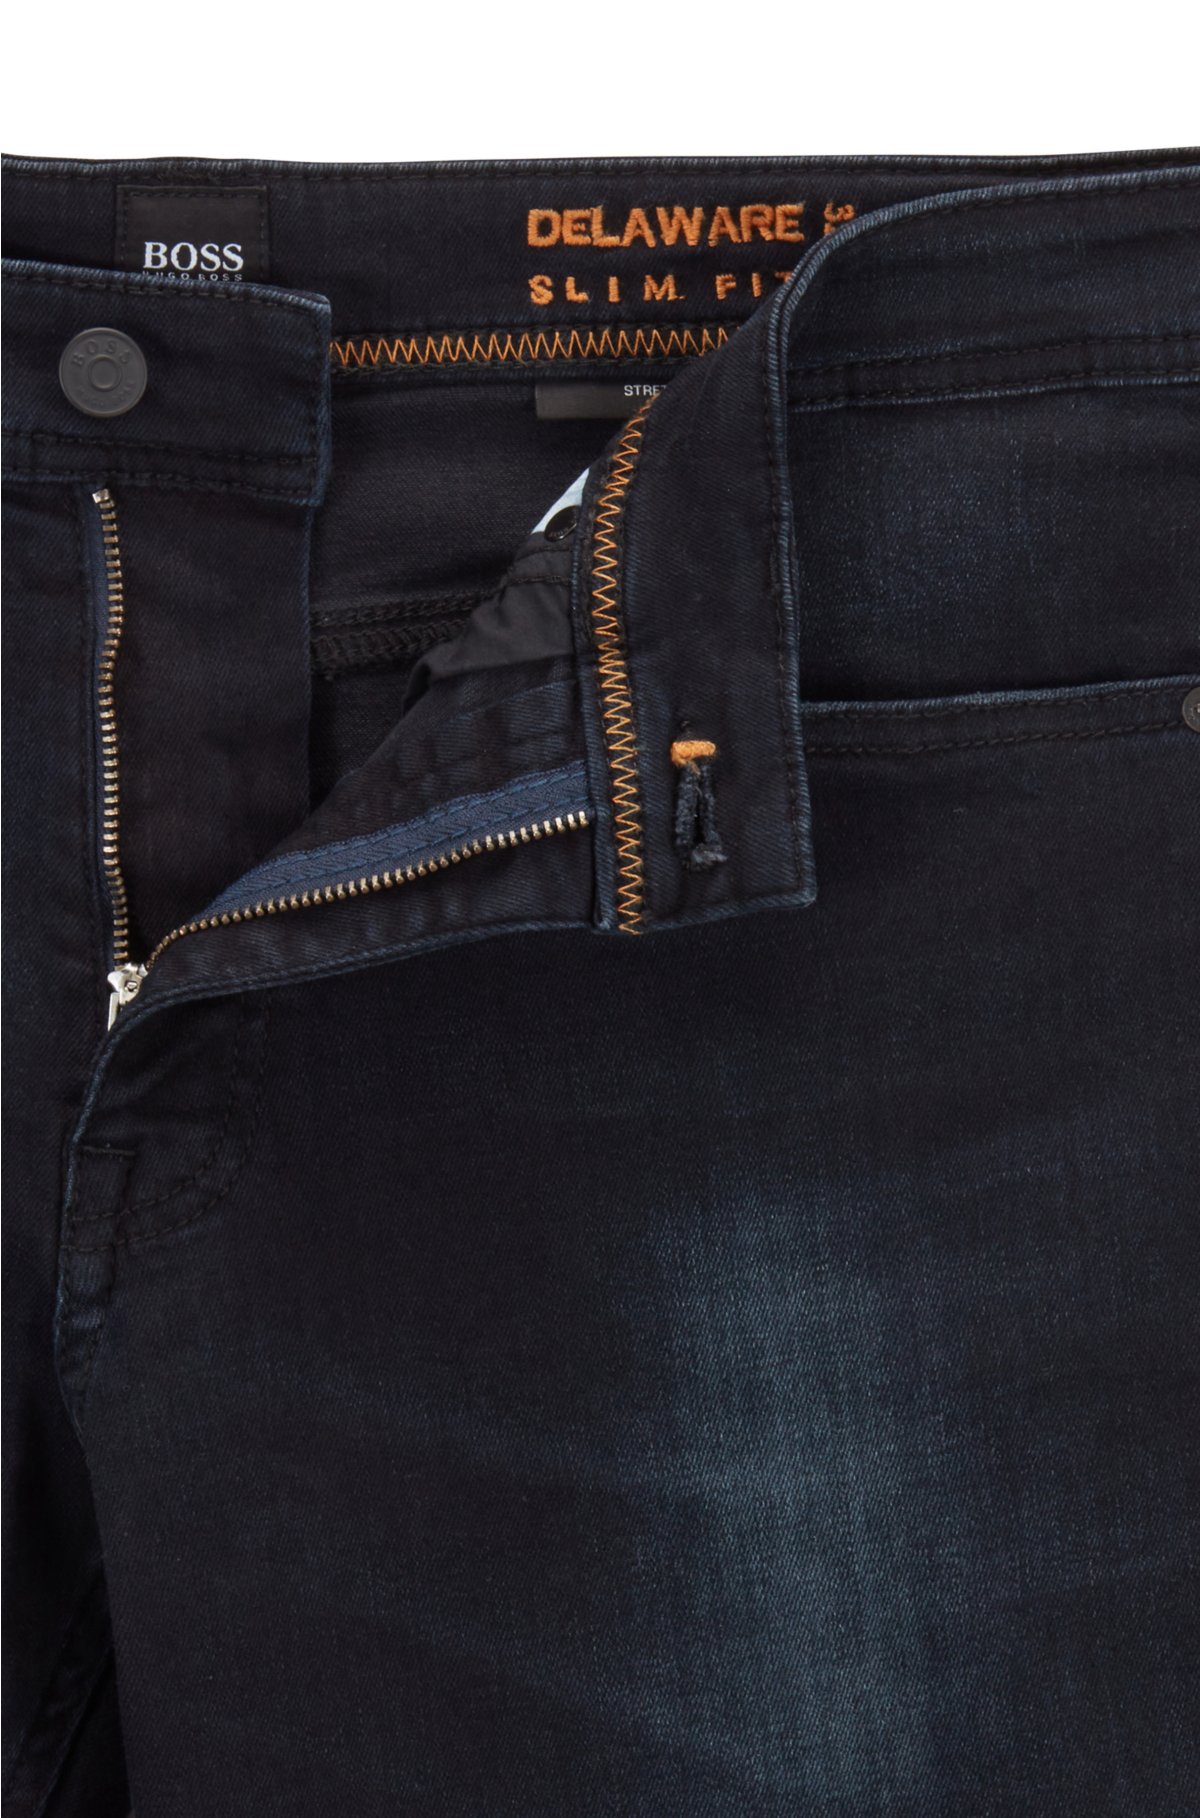 BOSS - Slim-fit jeans in super-stretch denim